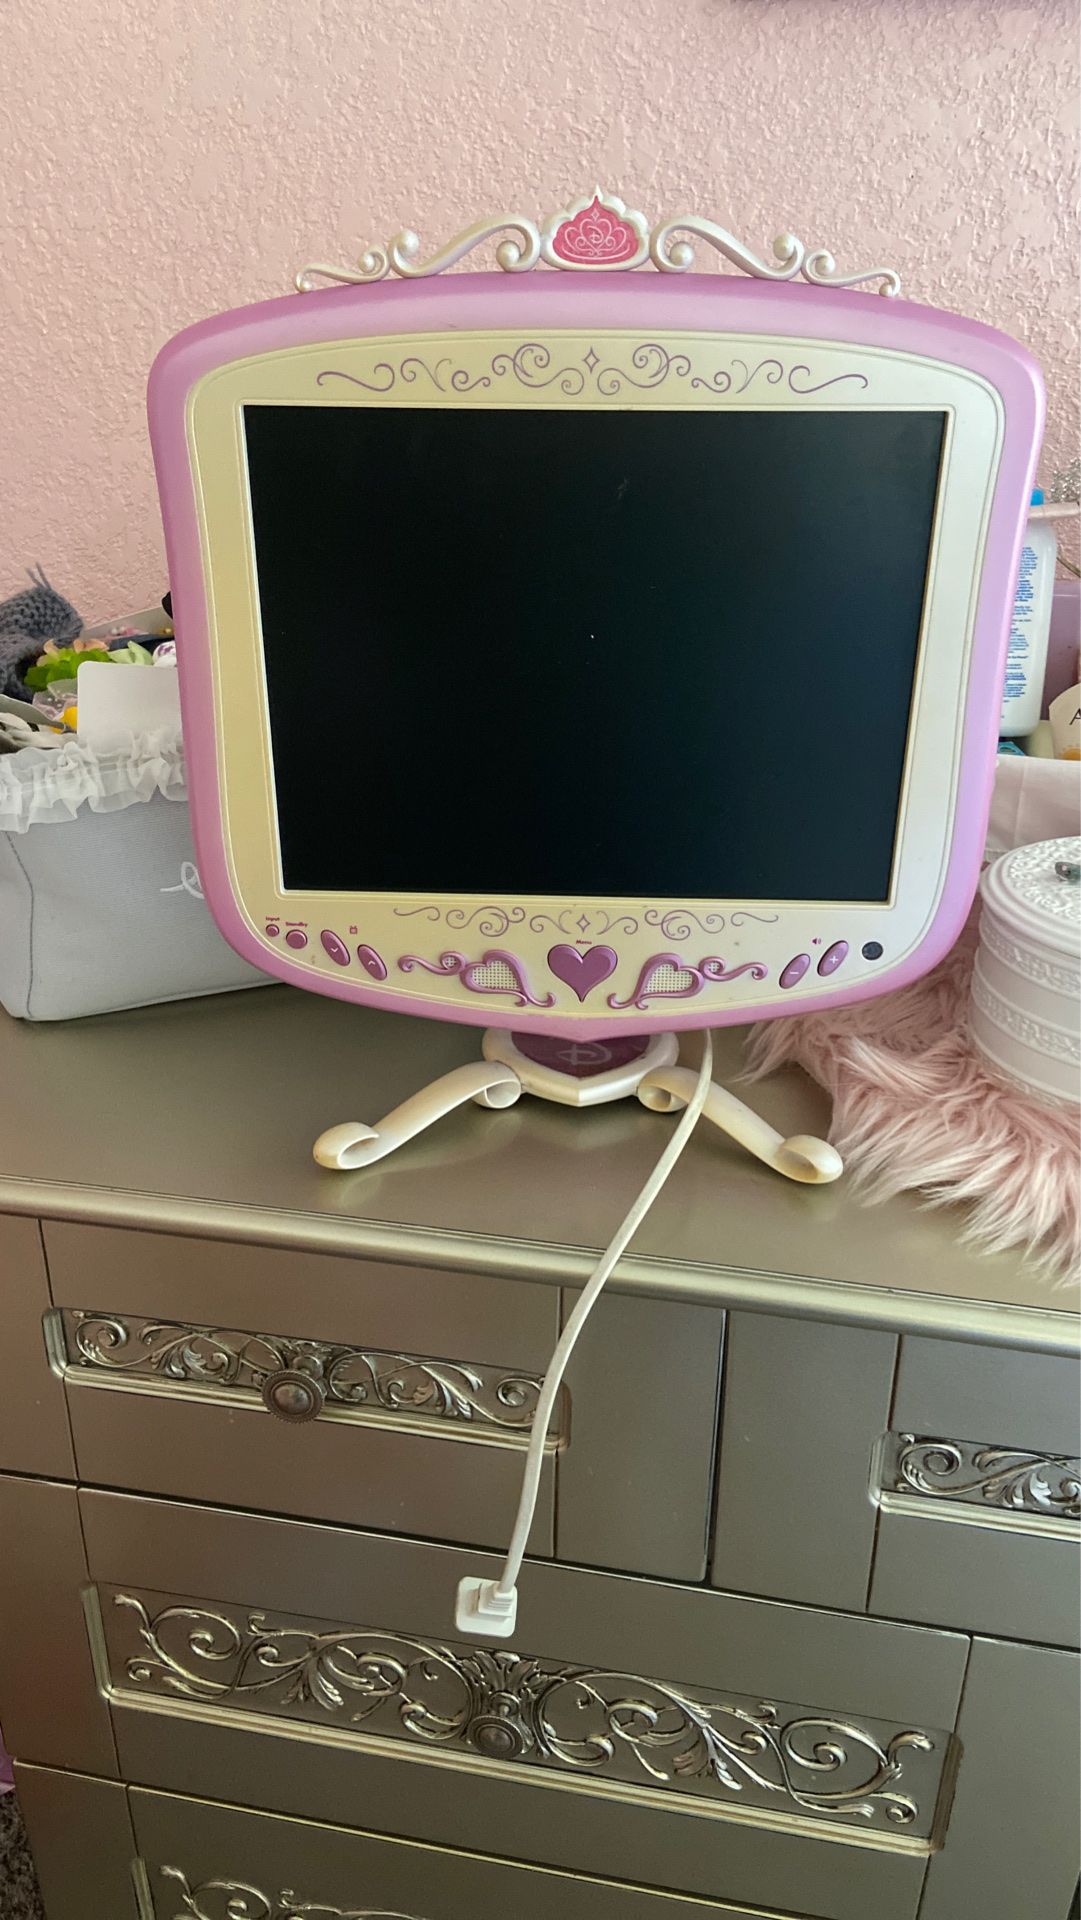 Disney princess pink flat screen tv